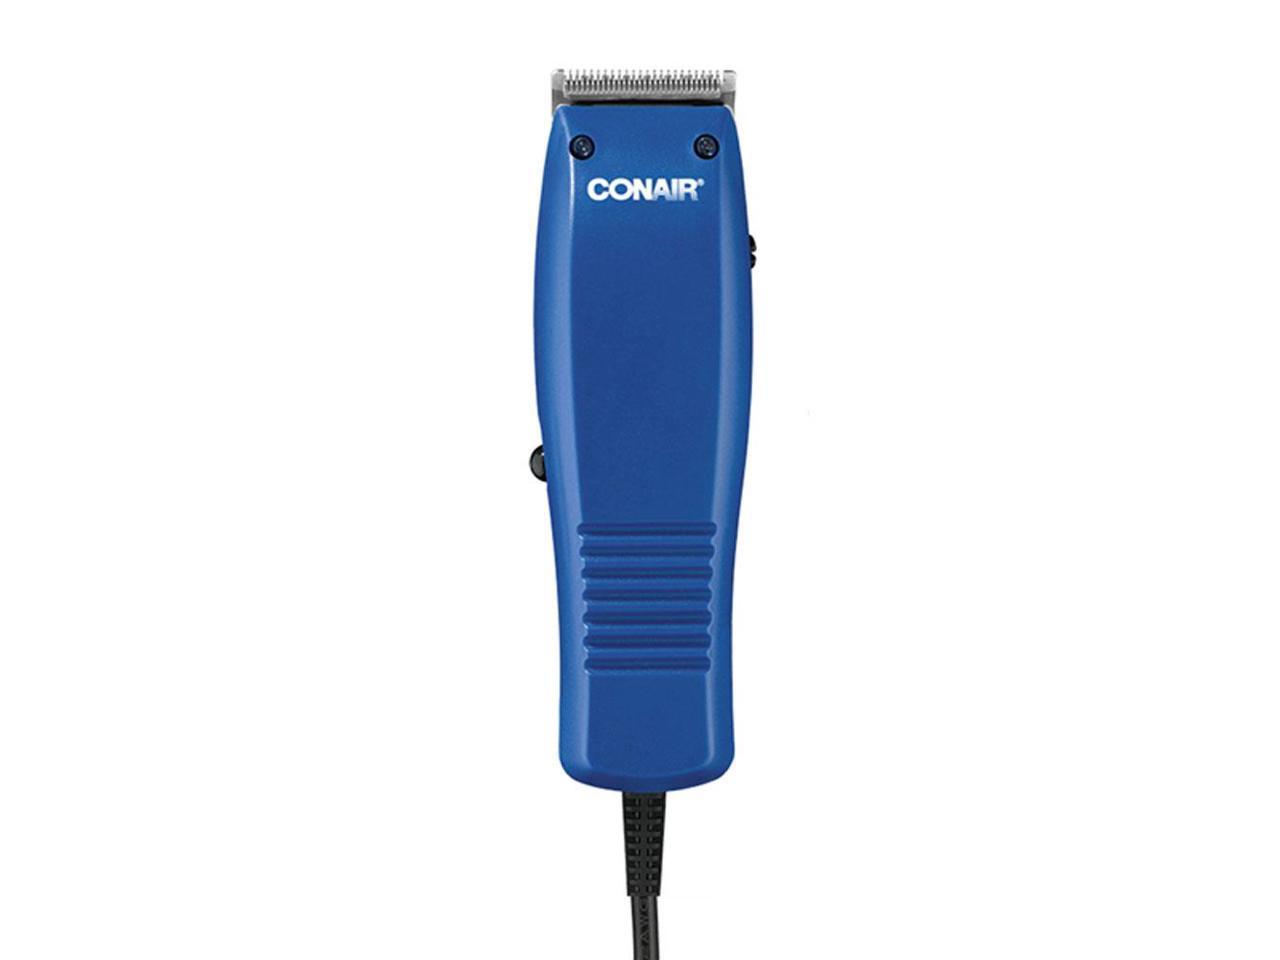 conair hair clippers power cord